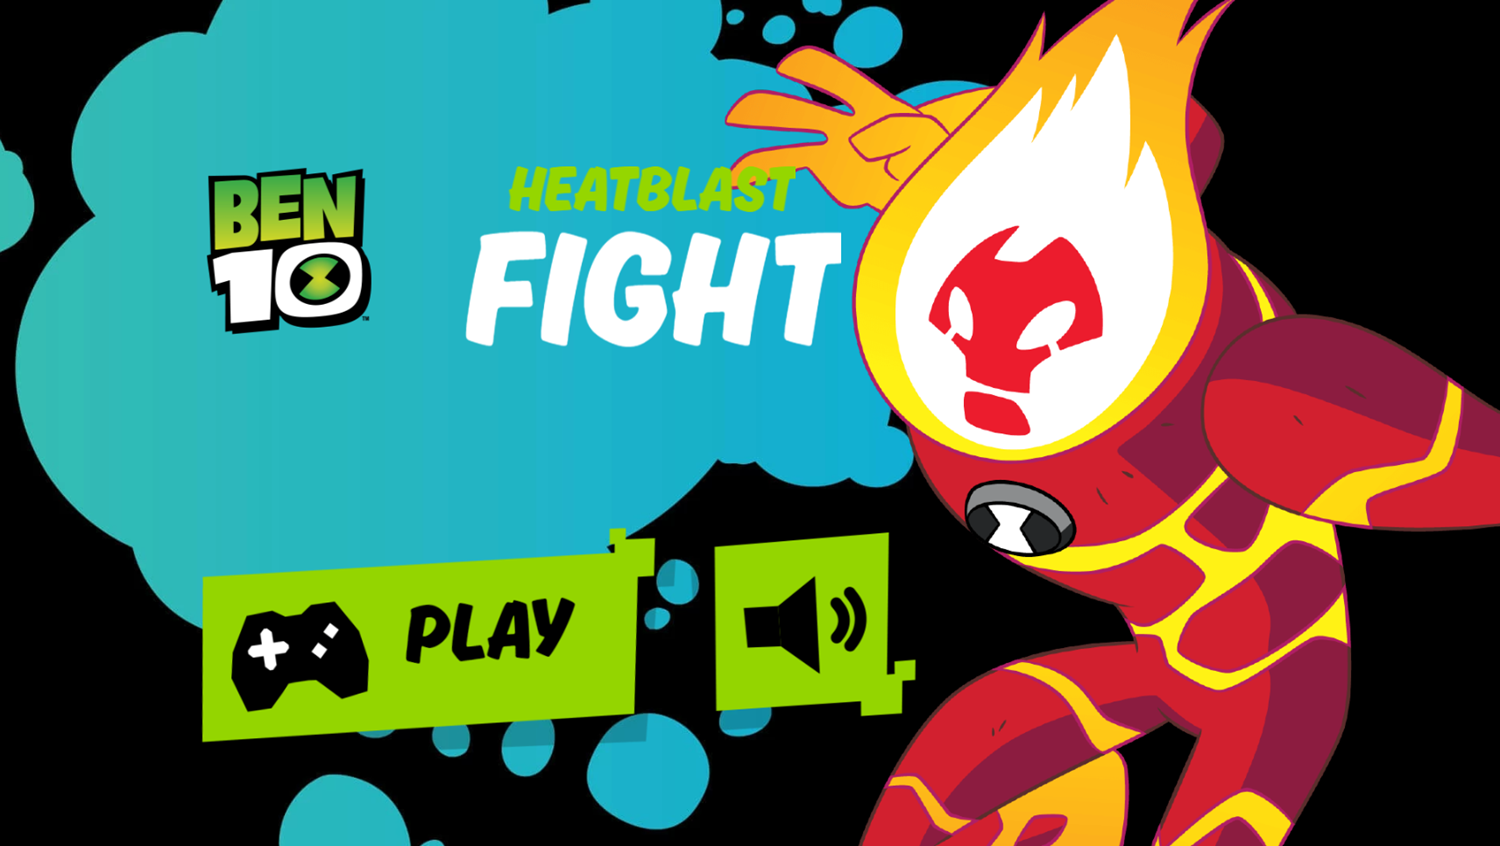 Ben 10 Heatblast fight Game Welcome Screen Screenshot.